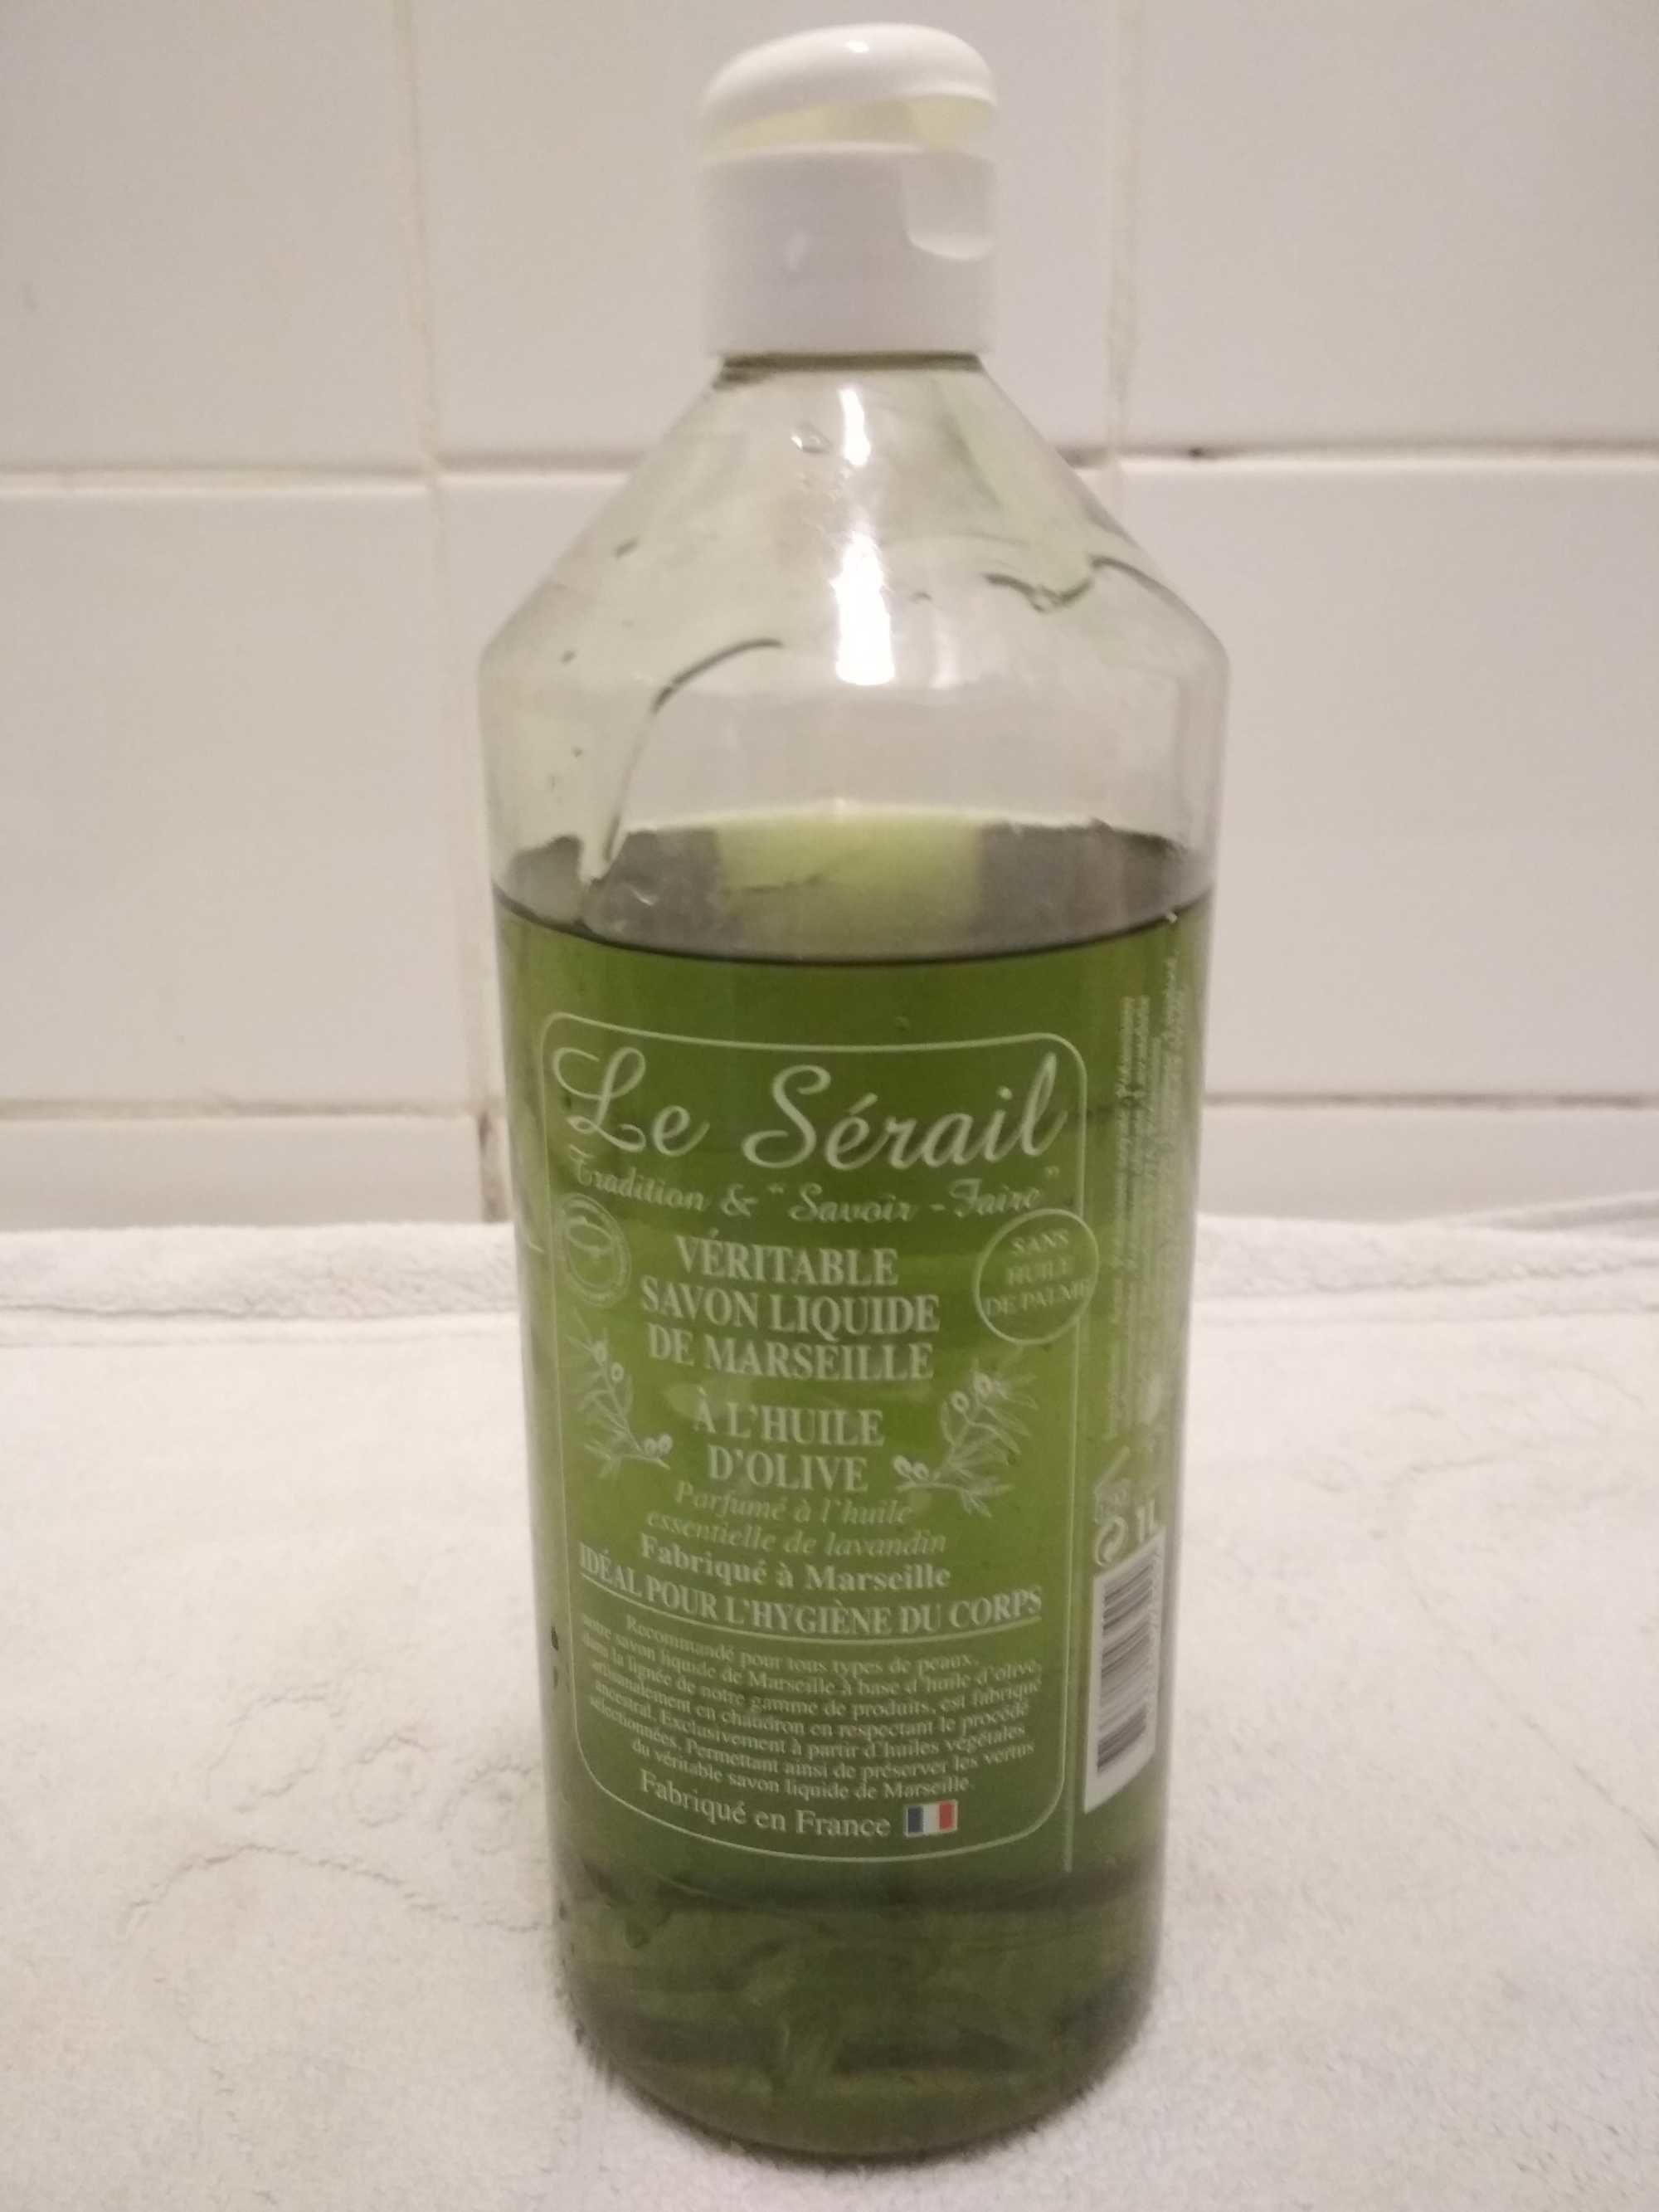 Véritable savon liquide de Marseille a l'huile d'olive Le Sérail - Product - fr